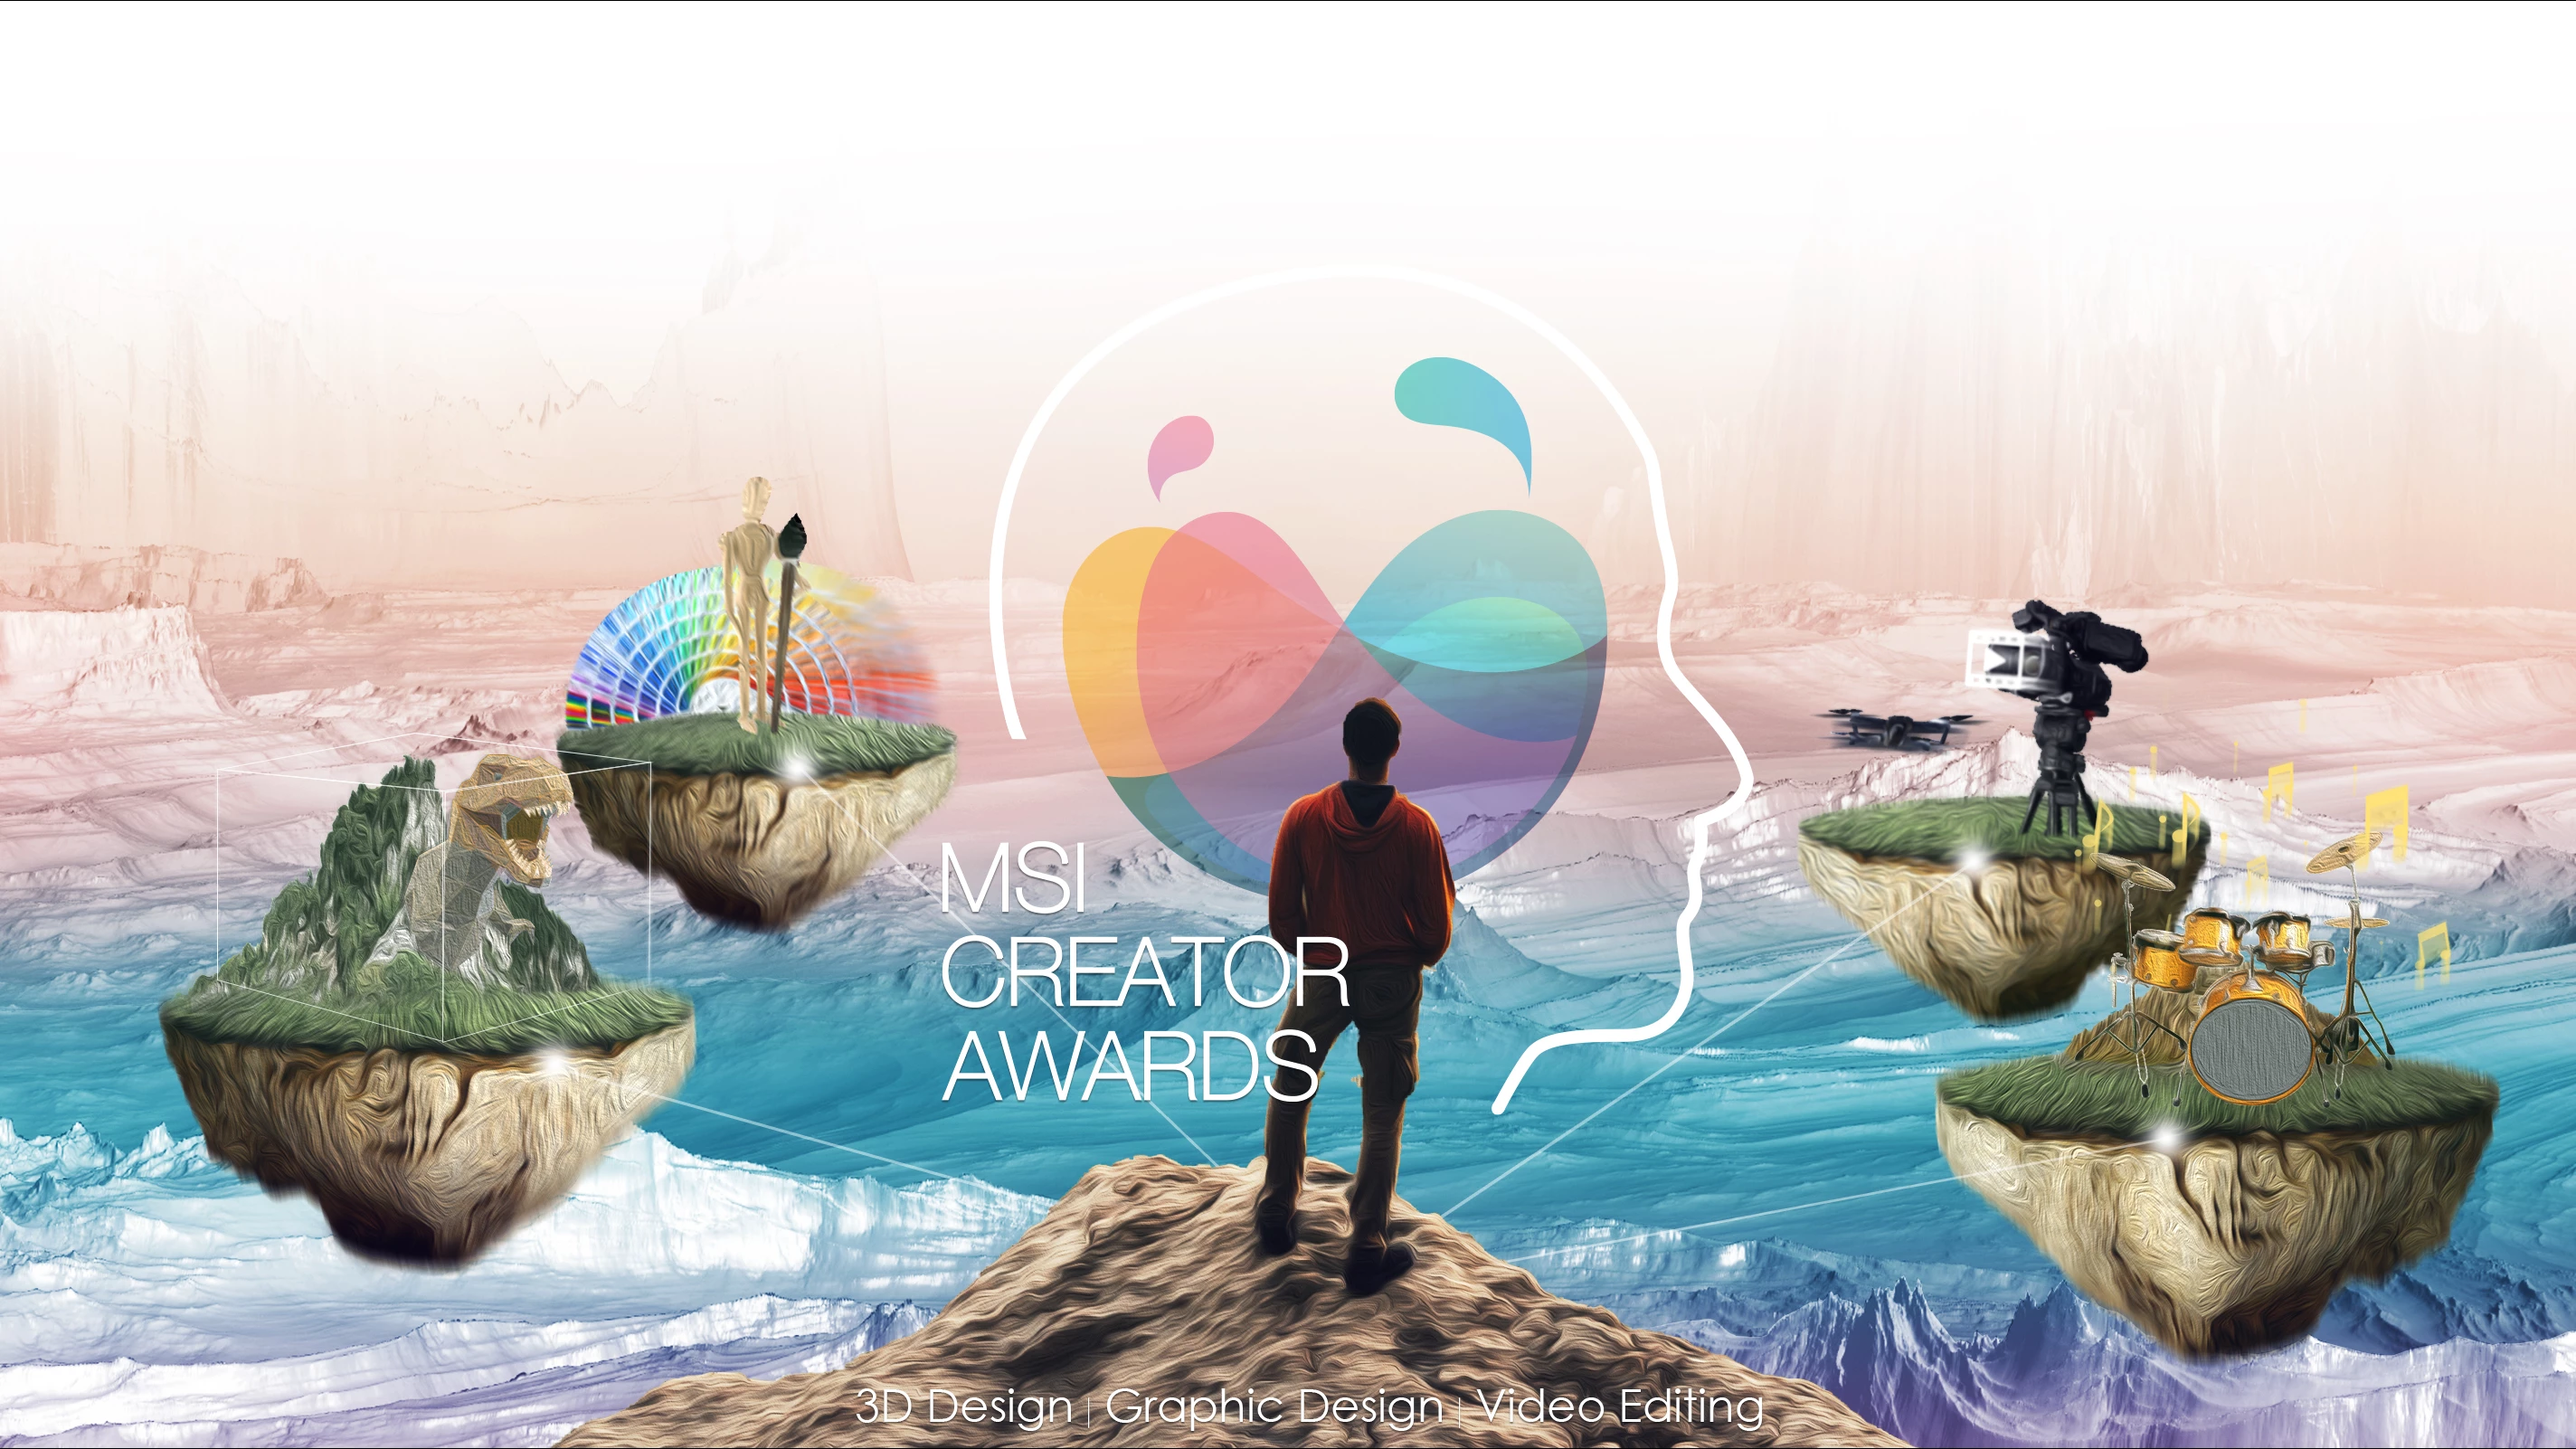 alkotok-figyelem-az-msi-elinditotta-az-idei-creators-awards-versenyet